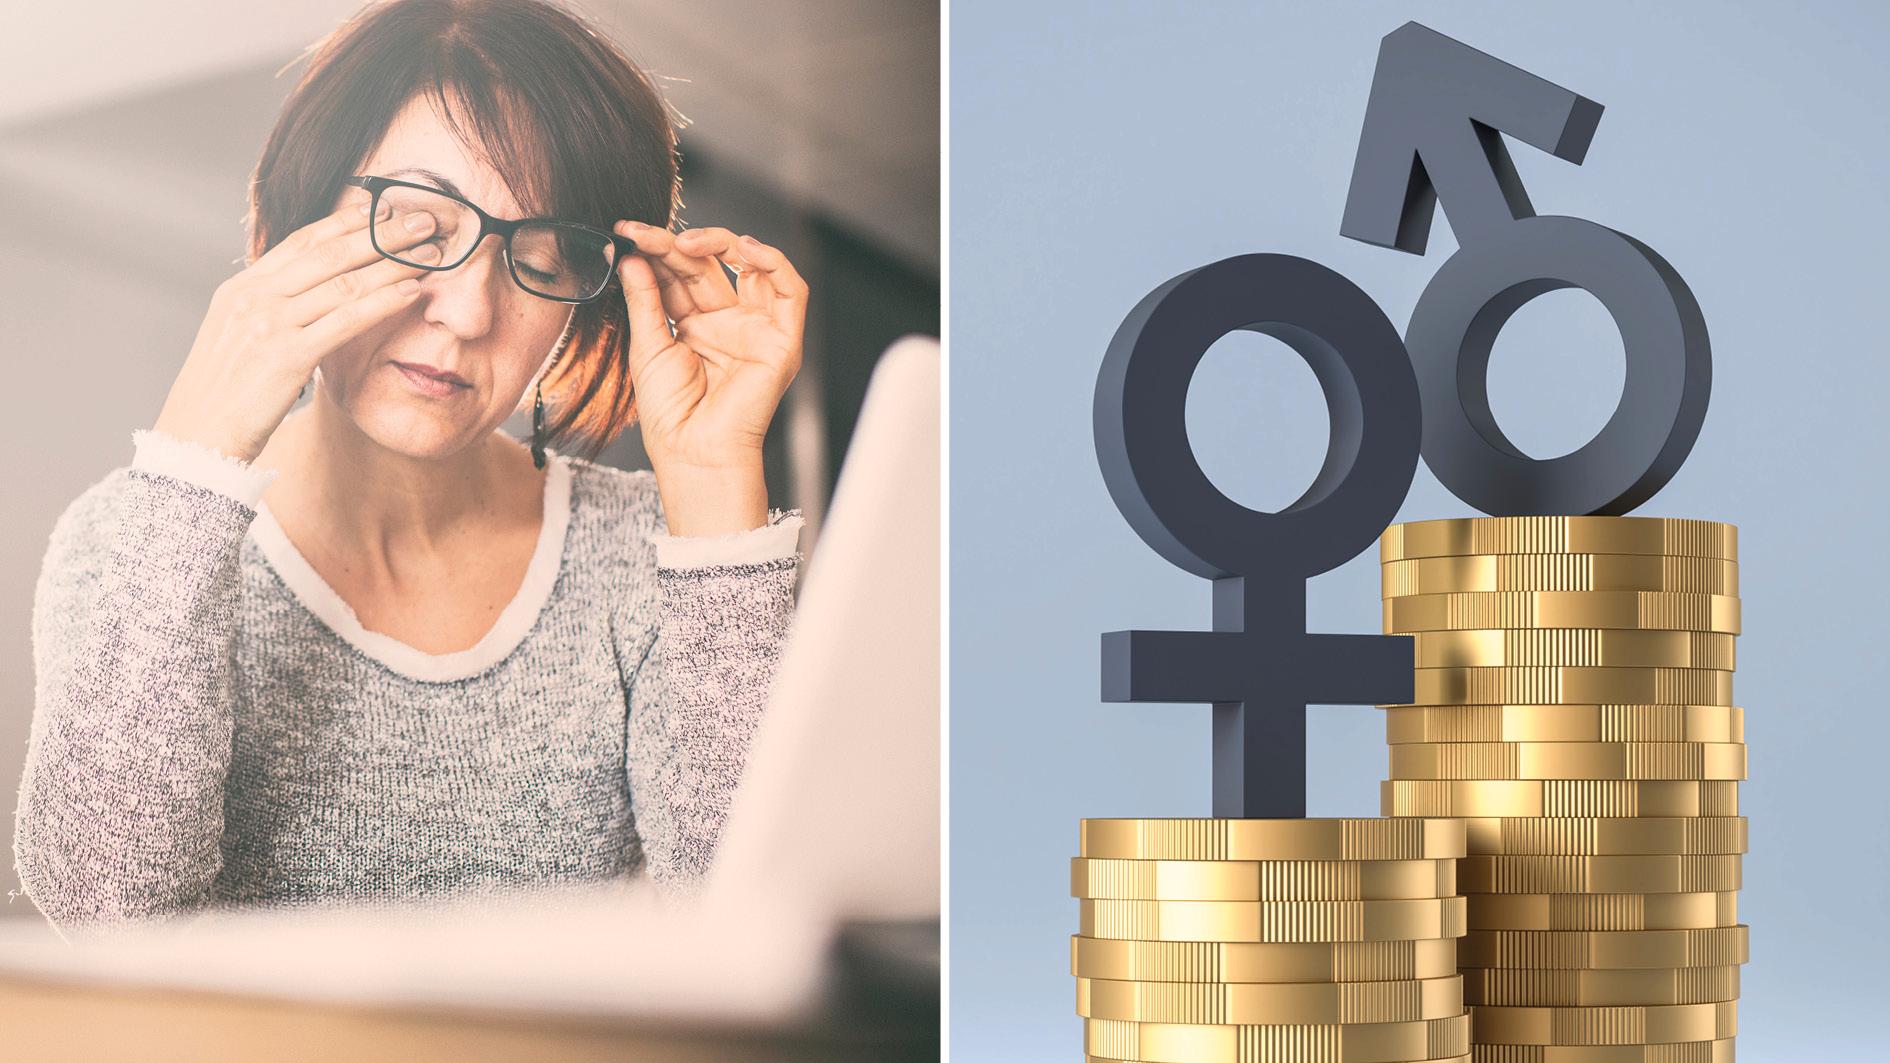 Sedan 2012 har kvinnorganisationernas initiativ Lön hela dagen uppmärksammat lönegapet mellan kvinnor och män. För första gången ökar nu gapet. Omräknat till tid betyder det att kvinnor jobbar gratis efter klockan 16.12 varje dag, medan män får betalt till klockan 17.00, skriver debattörerna.